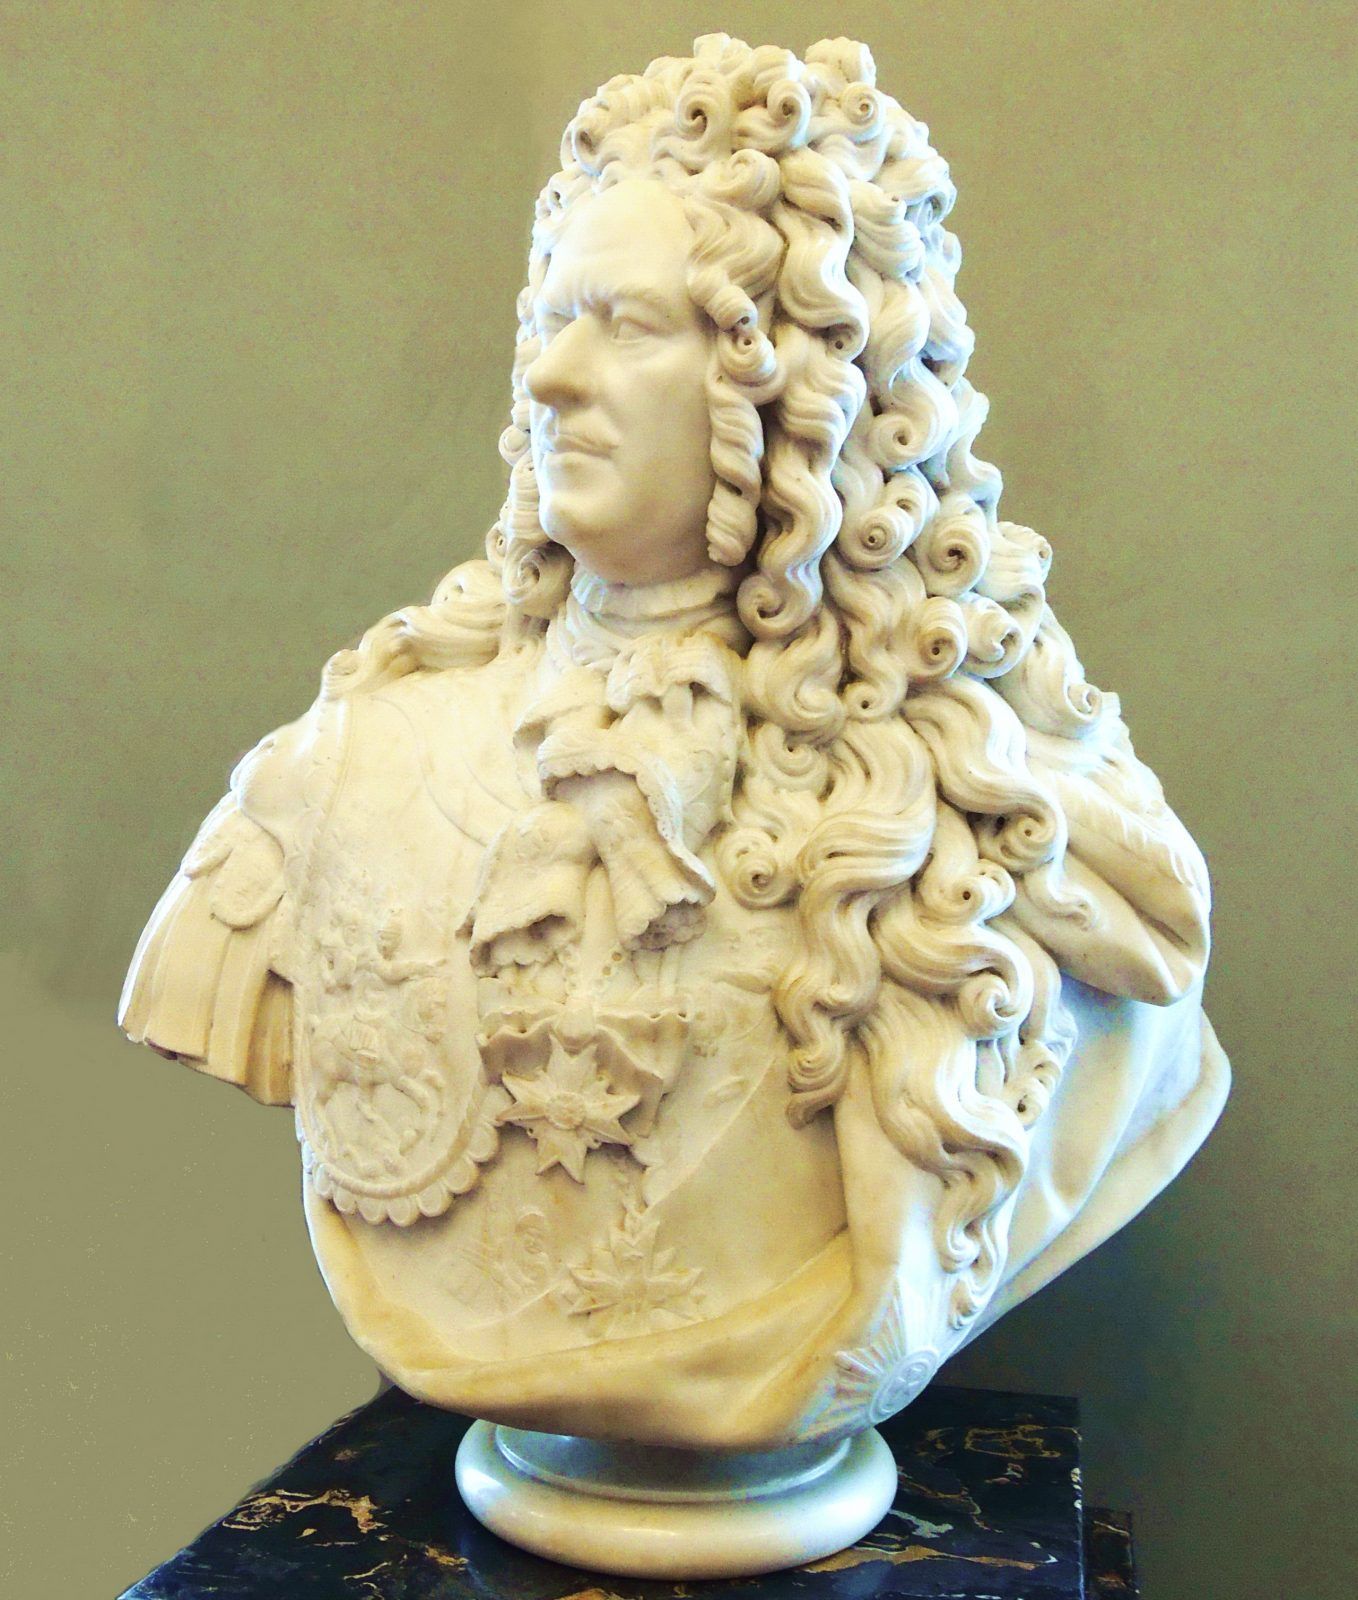 Карло Растрелли: «Портрет Александра Меншикова», — мраморный вариант работы Ивана Витали с бронзового оригинала 1717 года (ГРМ).